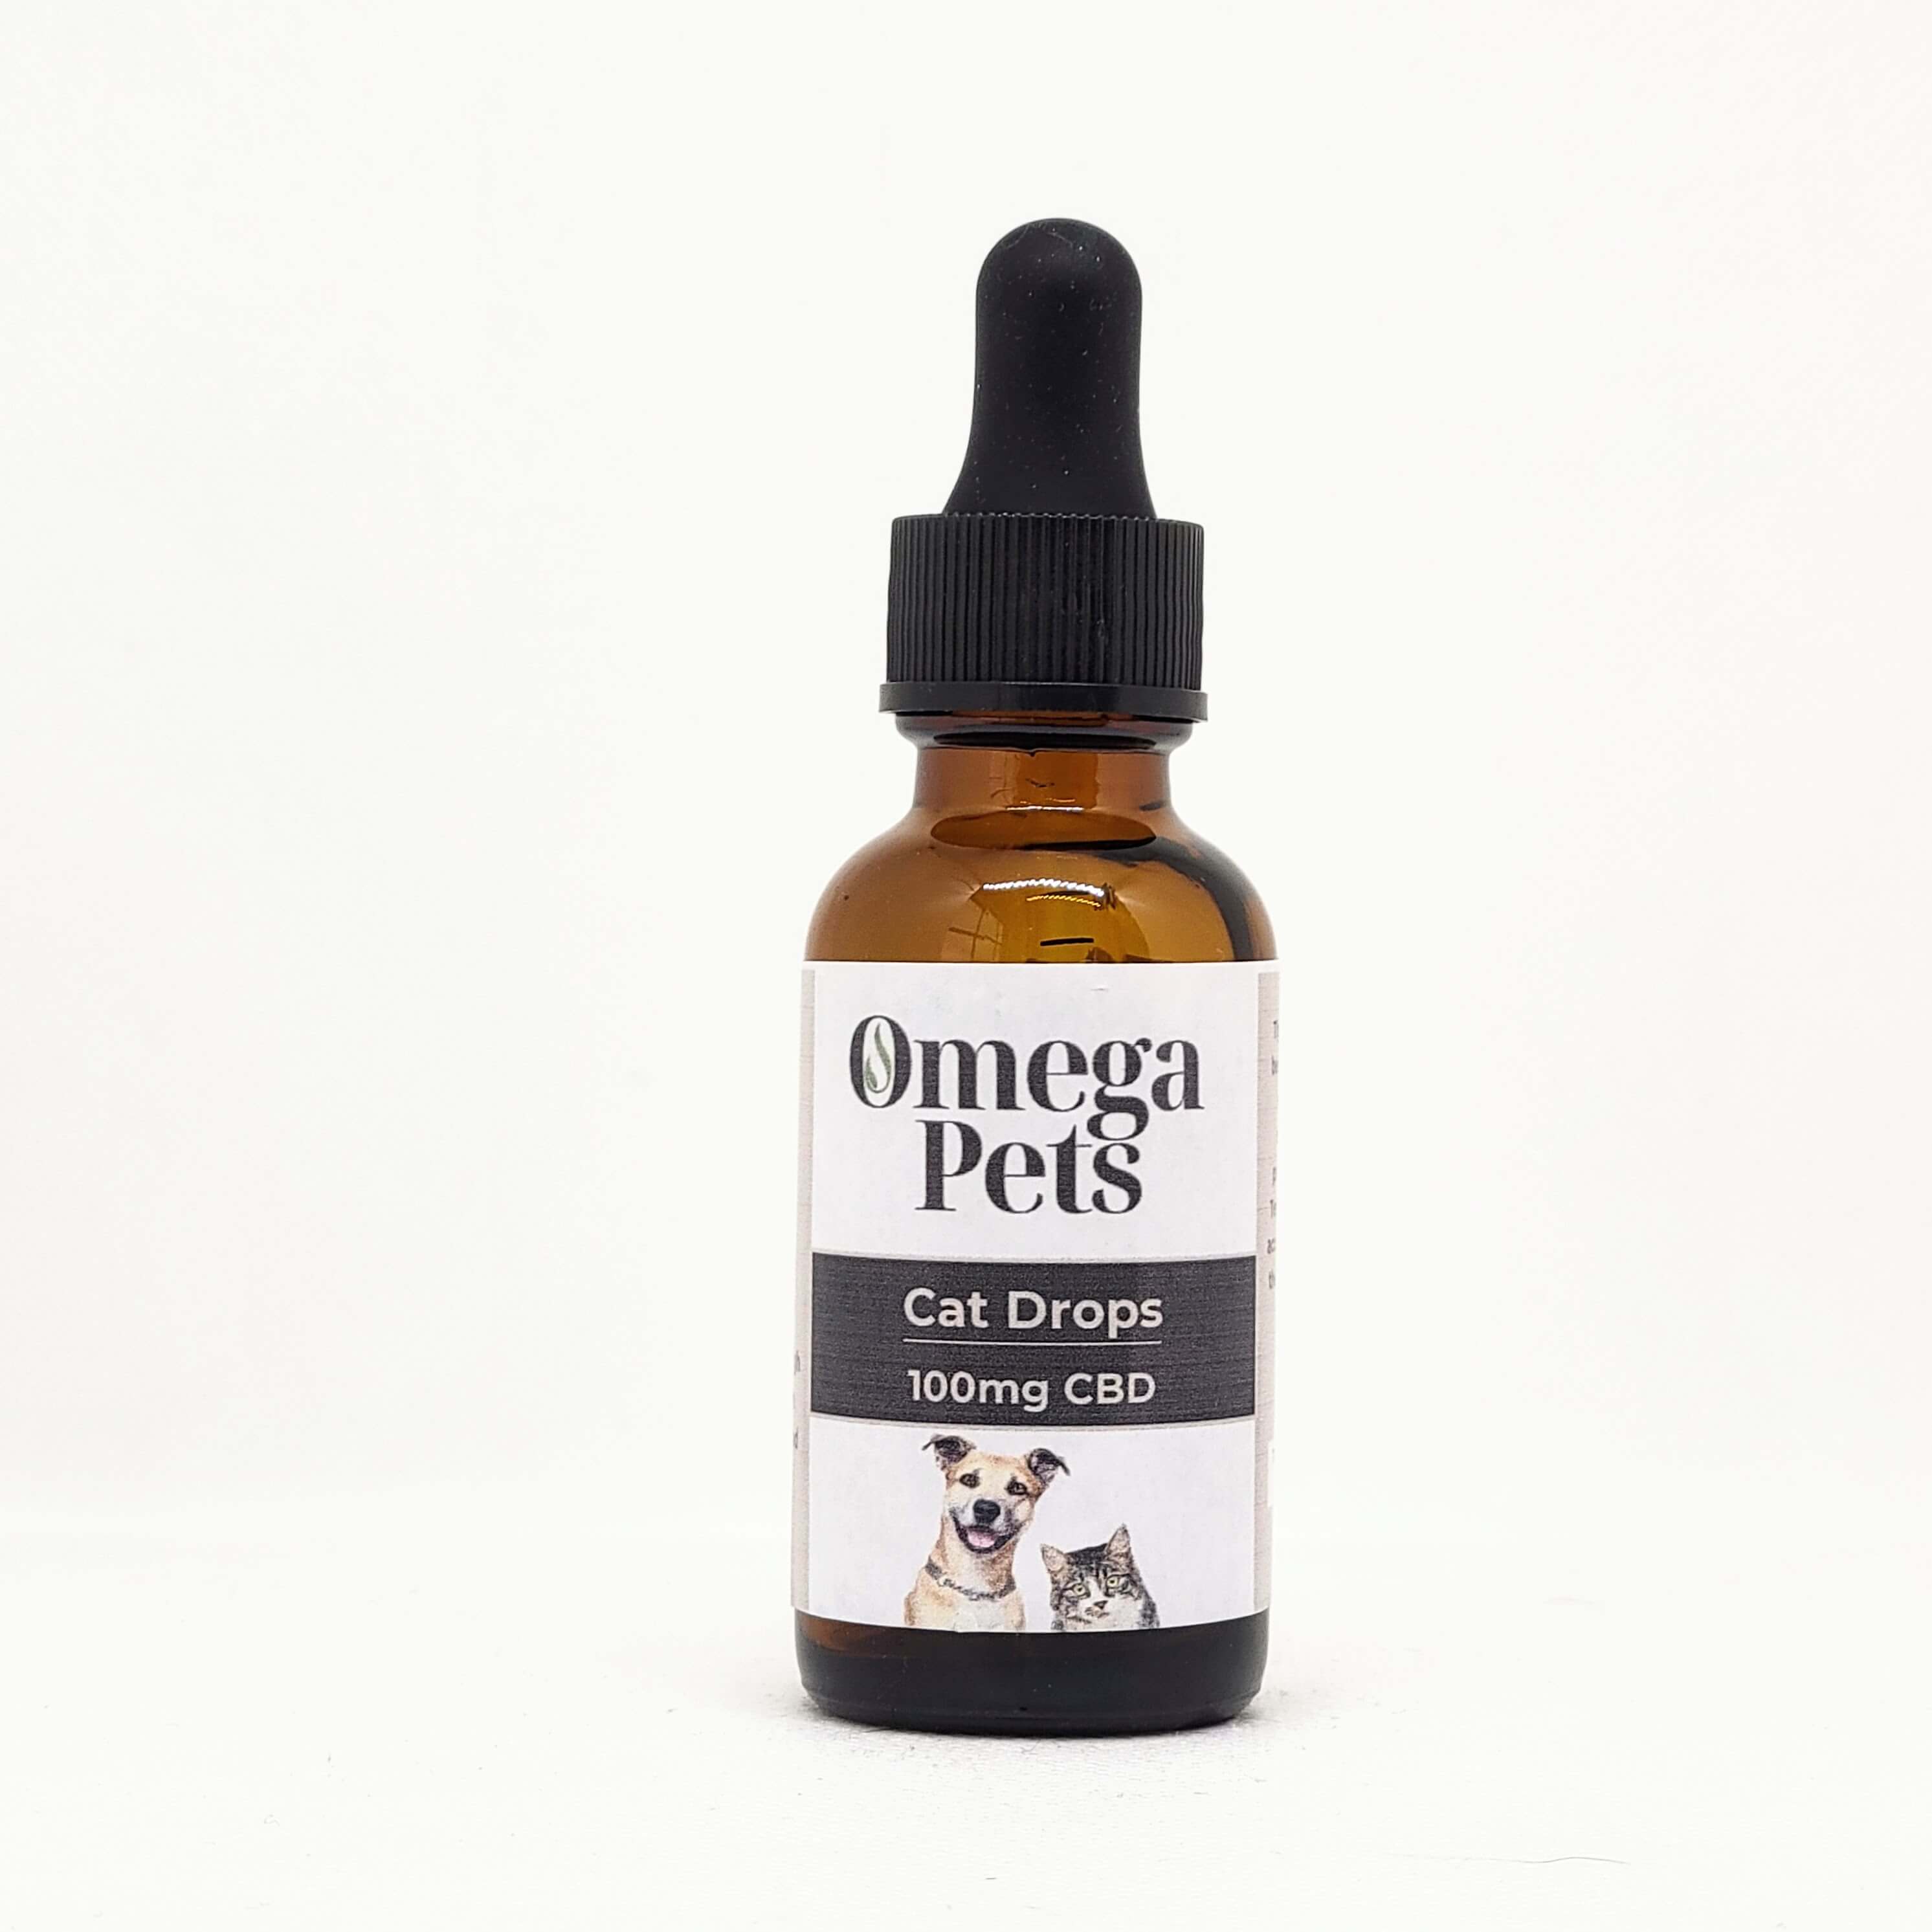 Omega Pets-Cat Drops CBD 100mg.